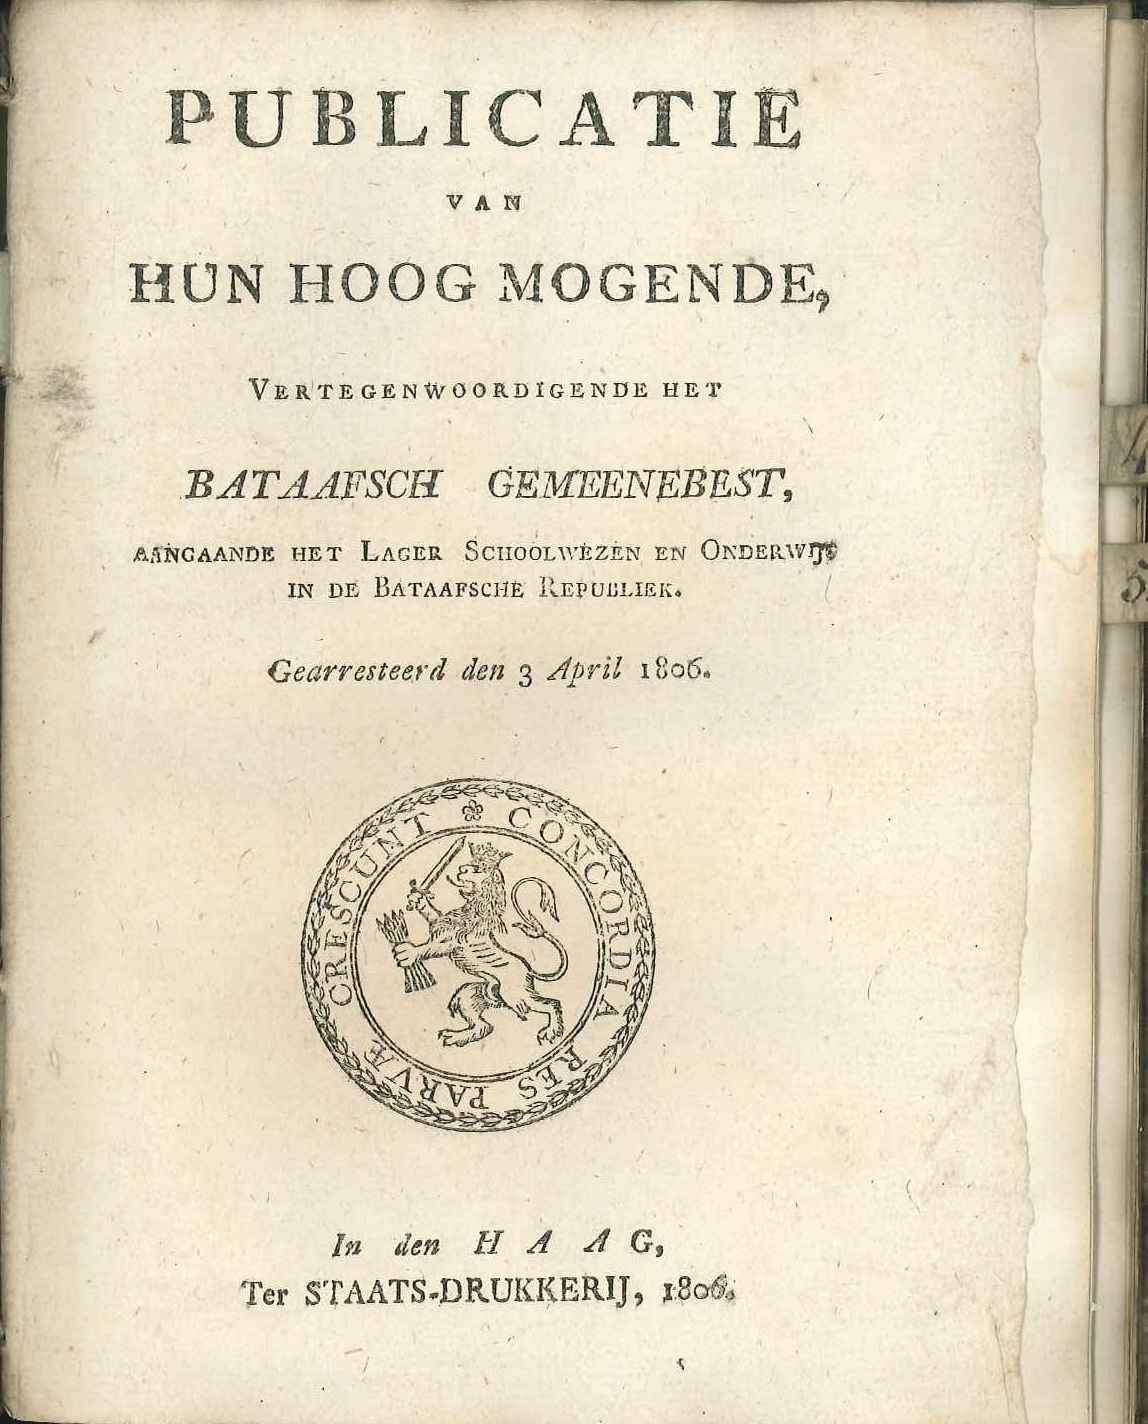 Bekendmaking over het onderwijs in de Bataafse republiek, 1806.